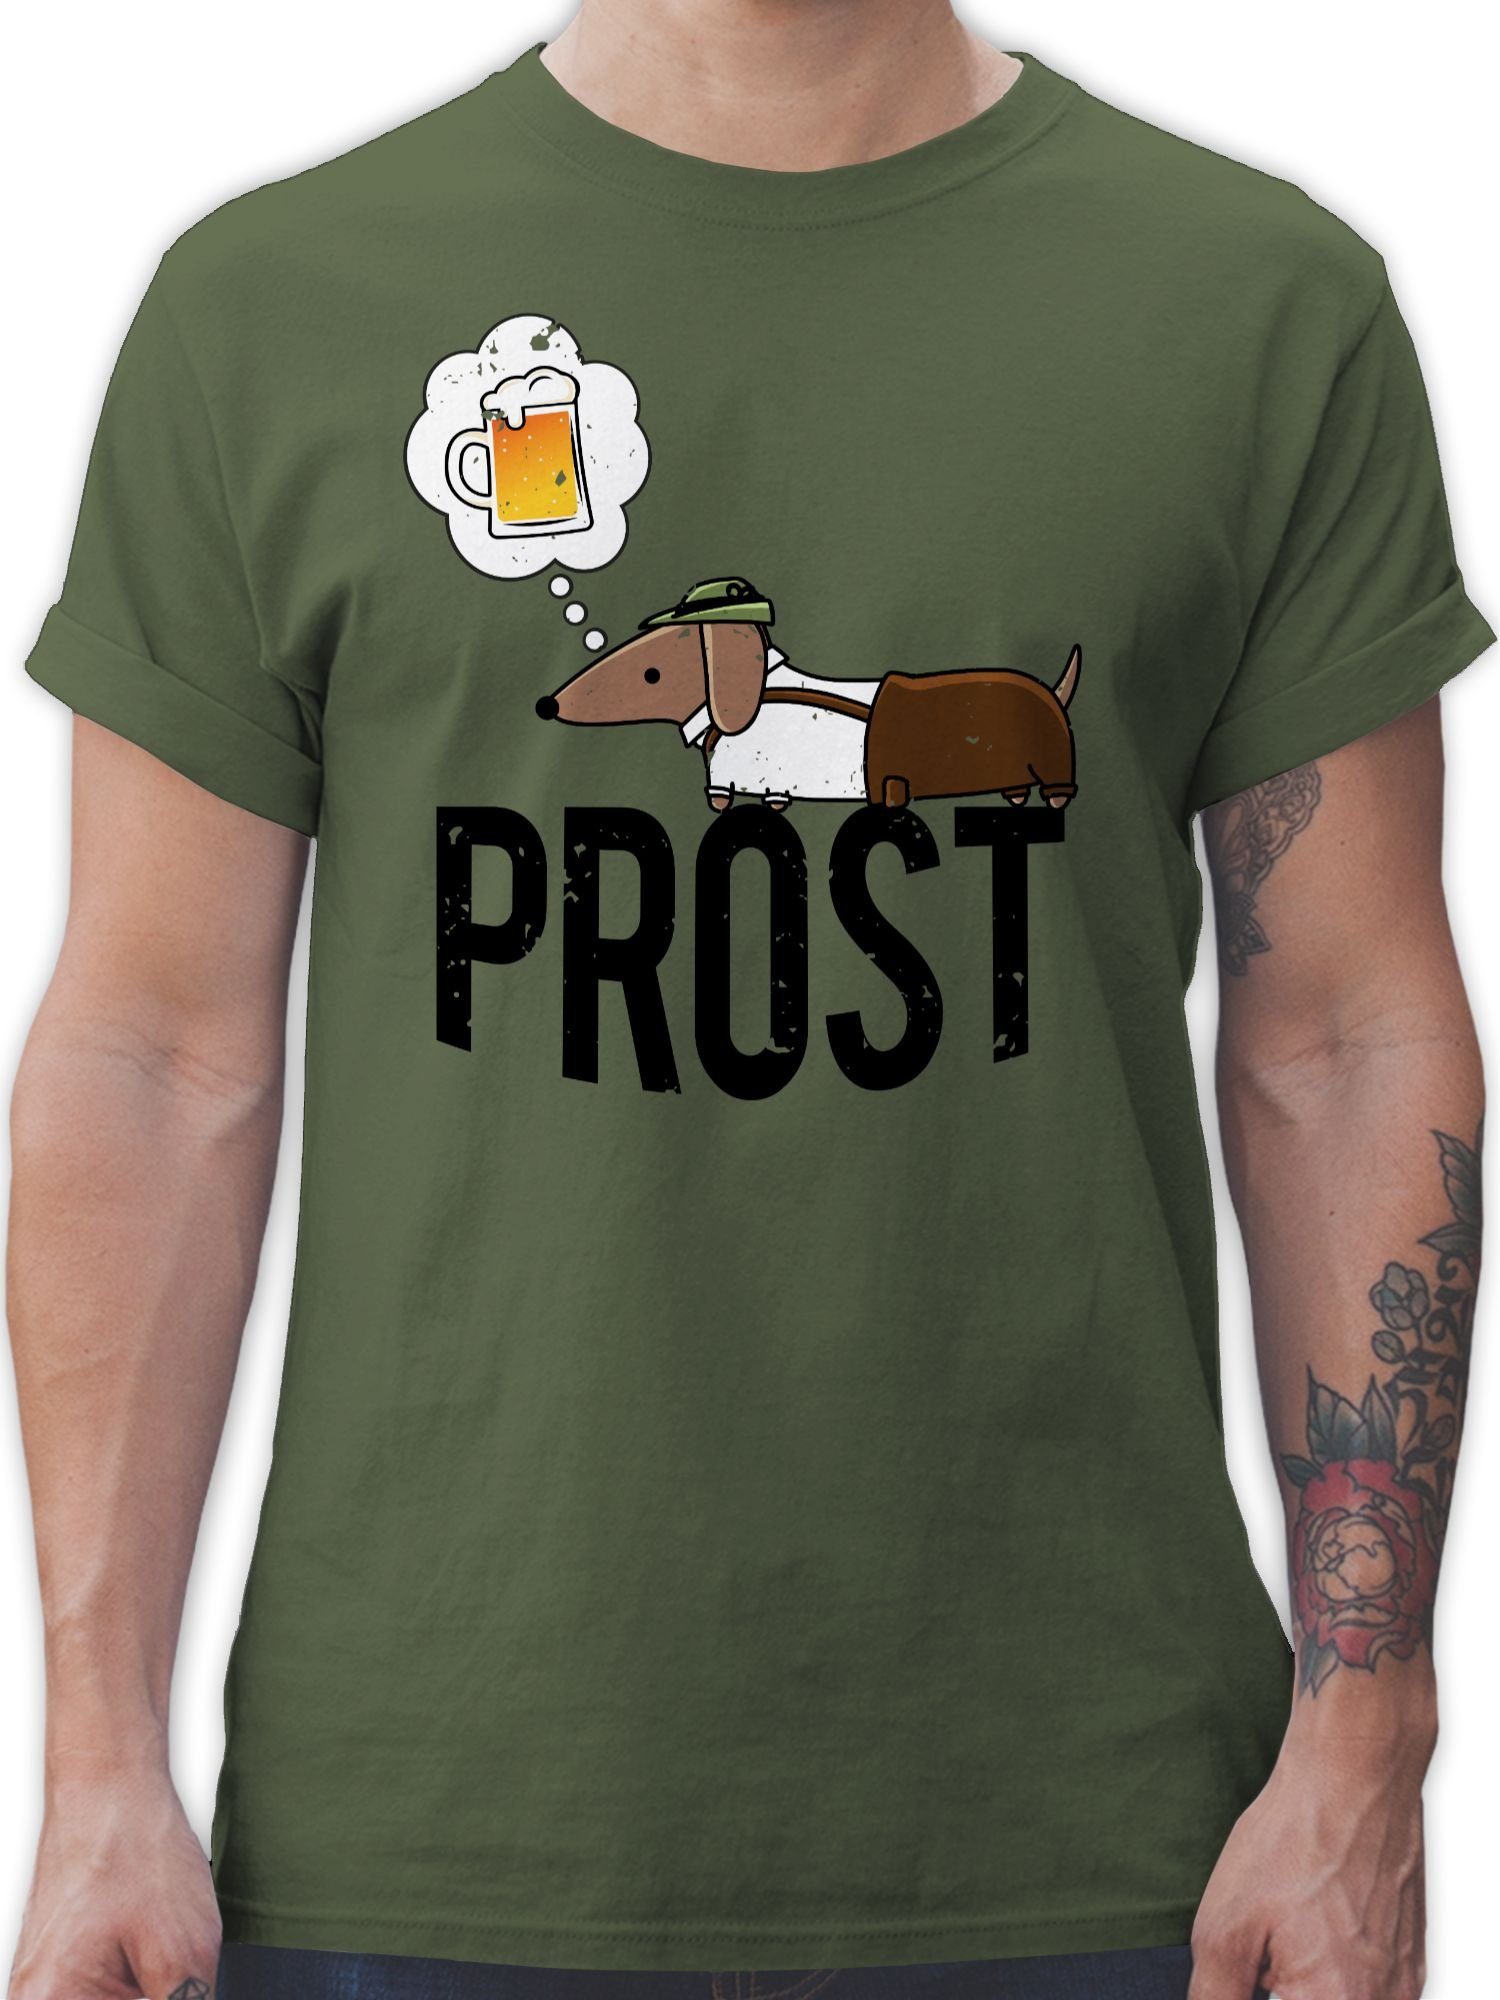 Shirtracer T-Shirt Prost mit Dackel und Bier Vintage - Mode für Oktoberfest  Herren - Herren Premium T-Shirt shirt grün - t-shirt mit bier sprüchen  herren - dackel tshirt